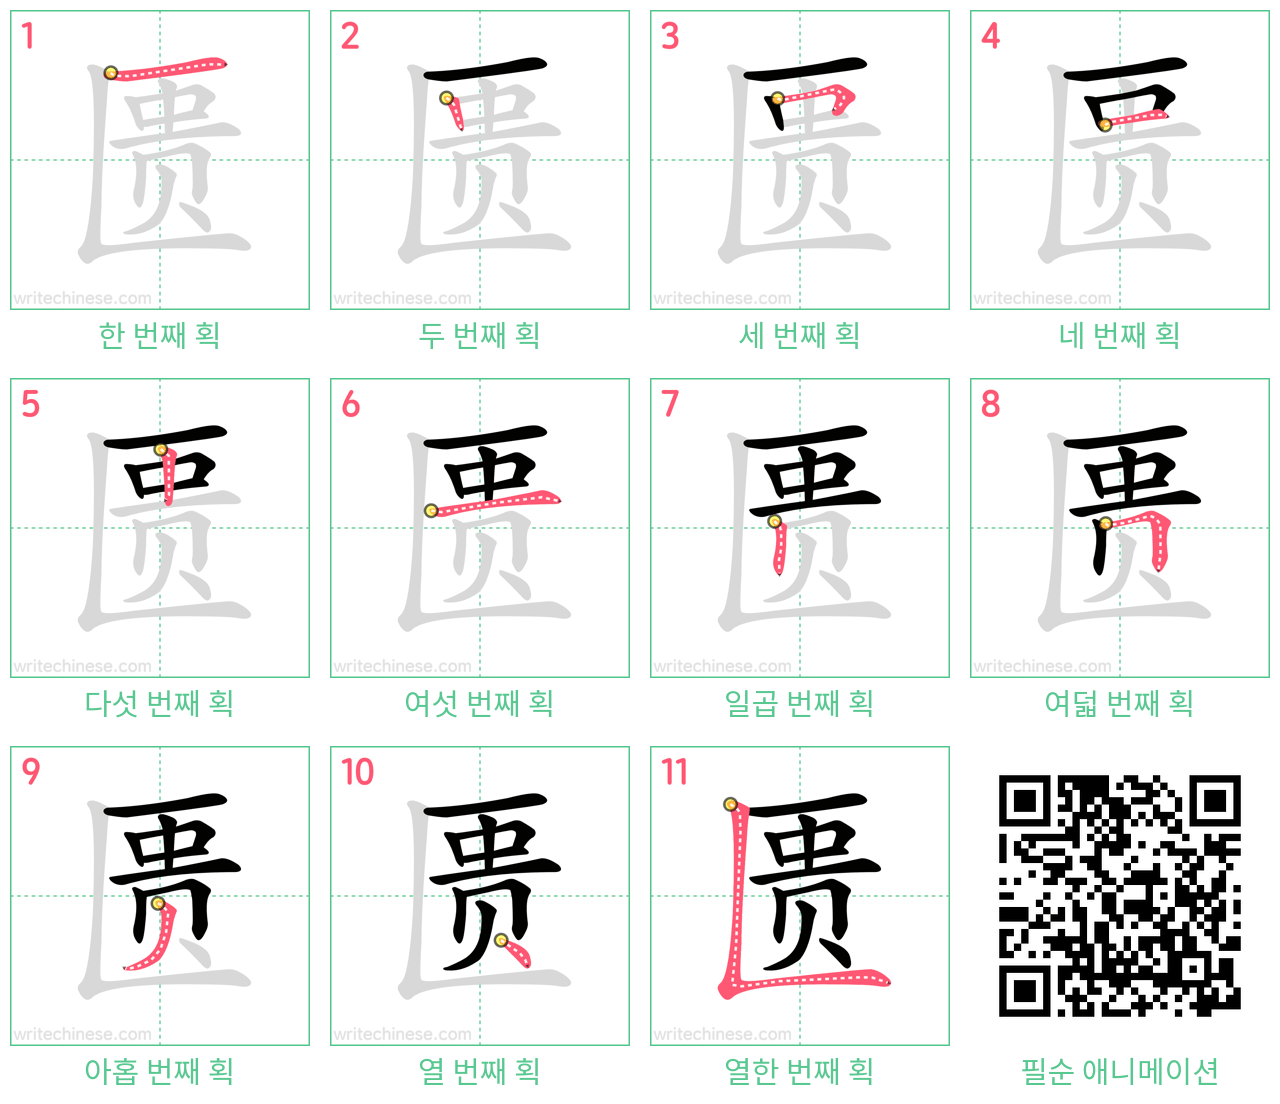 匮 step-by-step stroke order diagrams